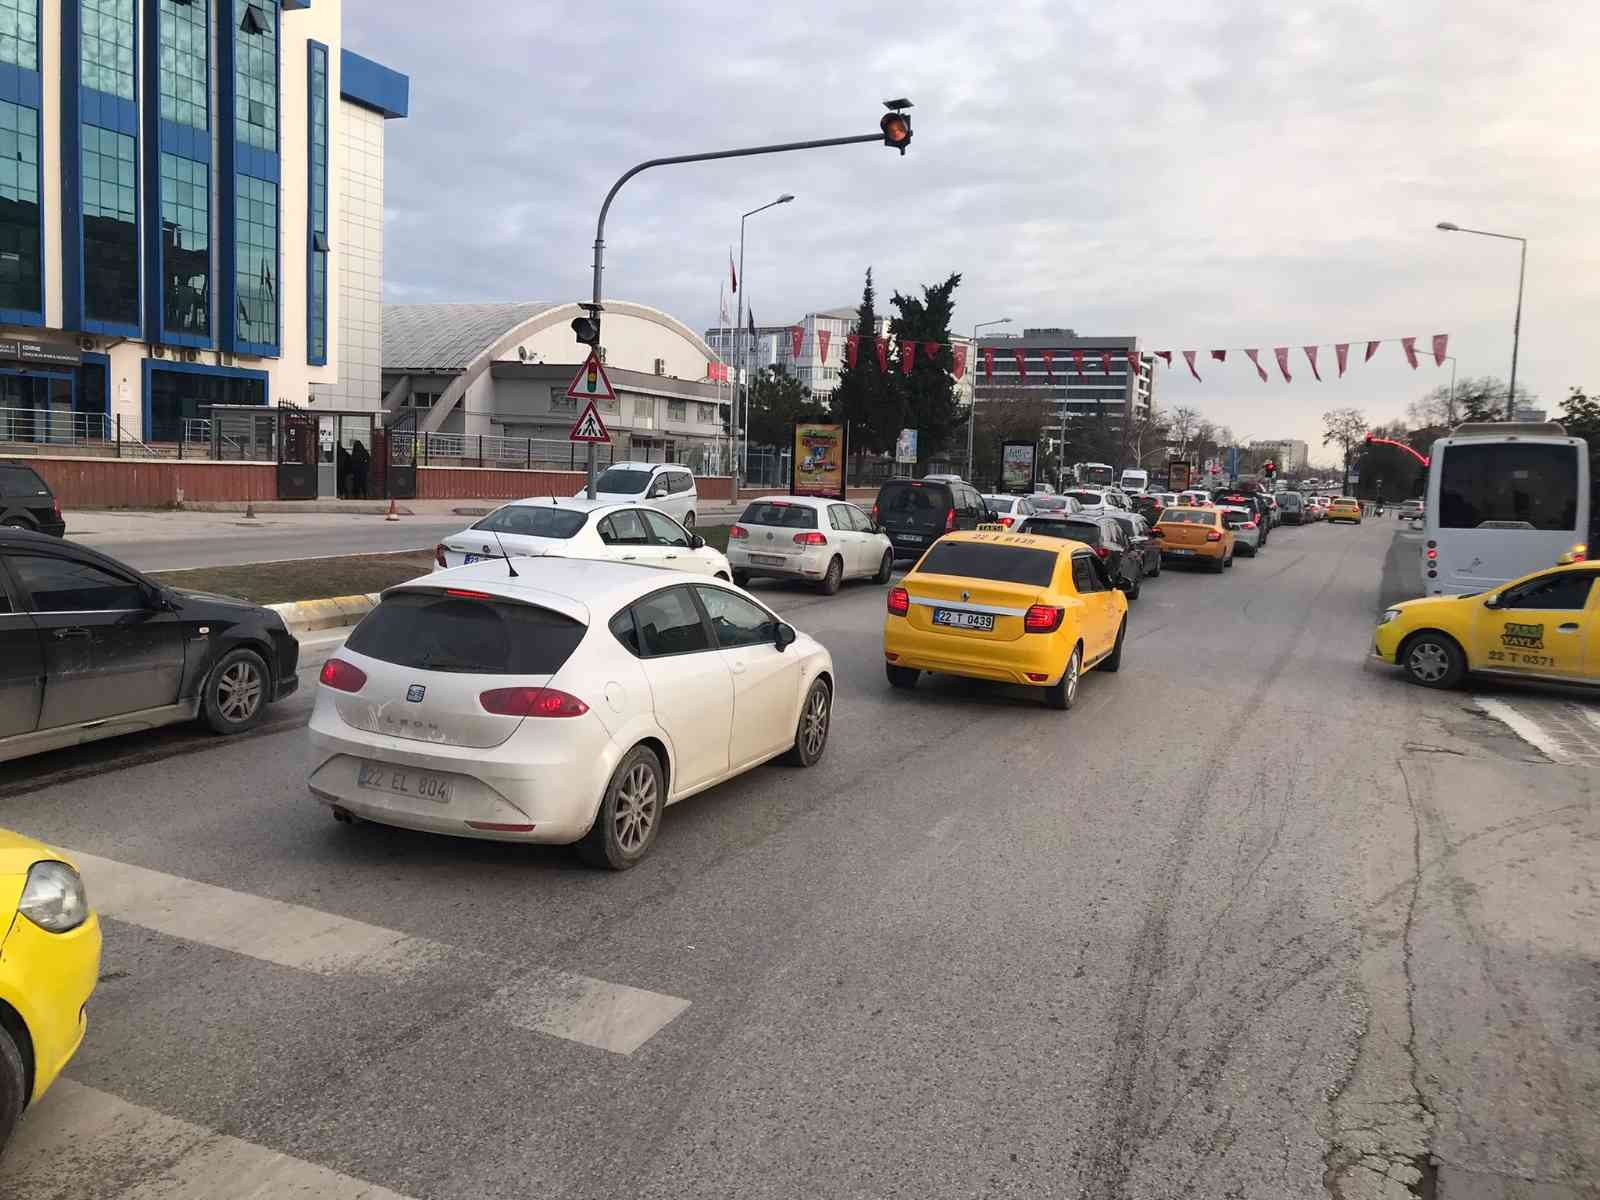 Edirne’de trafiğe kayıtlı araç sayısı arttı #edirne